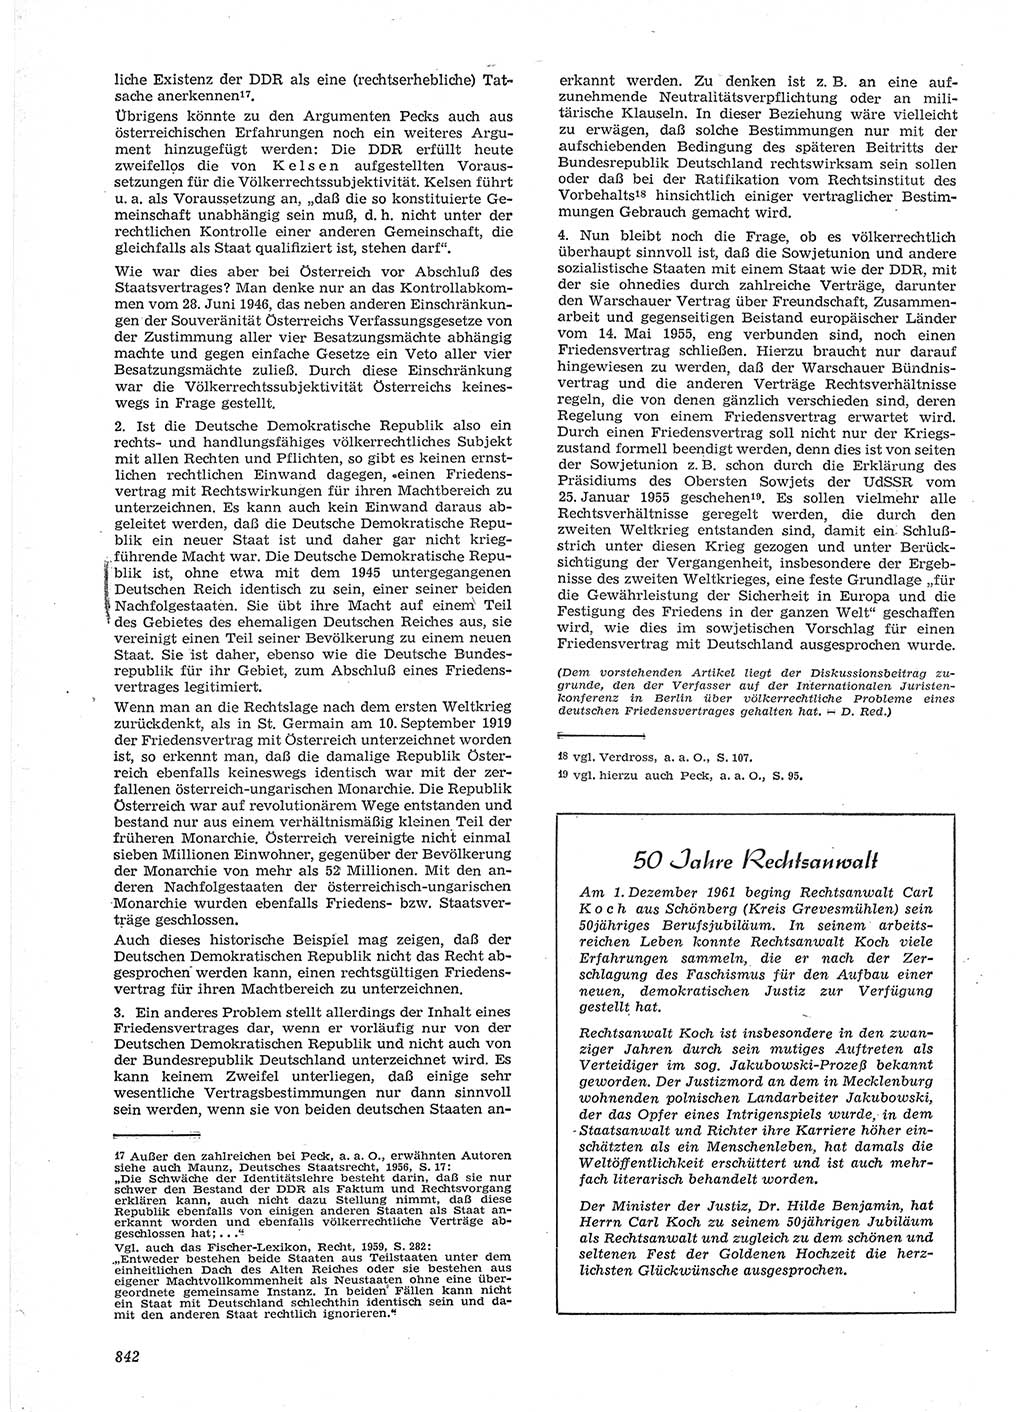 Neue Justiz (NJ), Zeitschrift für Recht und Rechtswissenschaft [Deutsche Demokratische Republik (DDR)], 15. Jahrgang 1961, Seite 842 (NJ DDR 1961, S. 842)